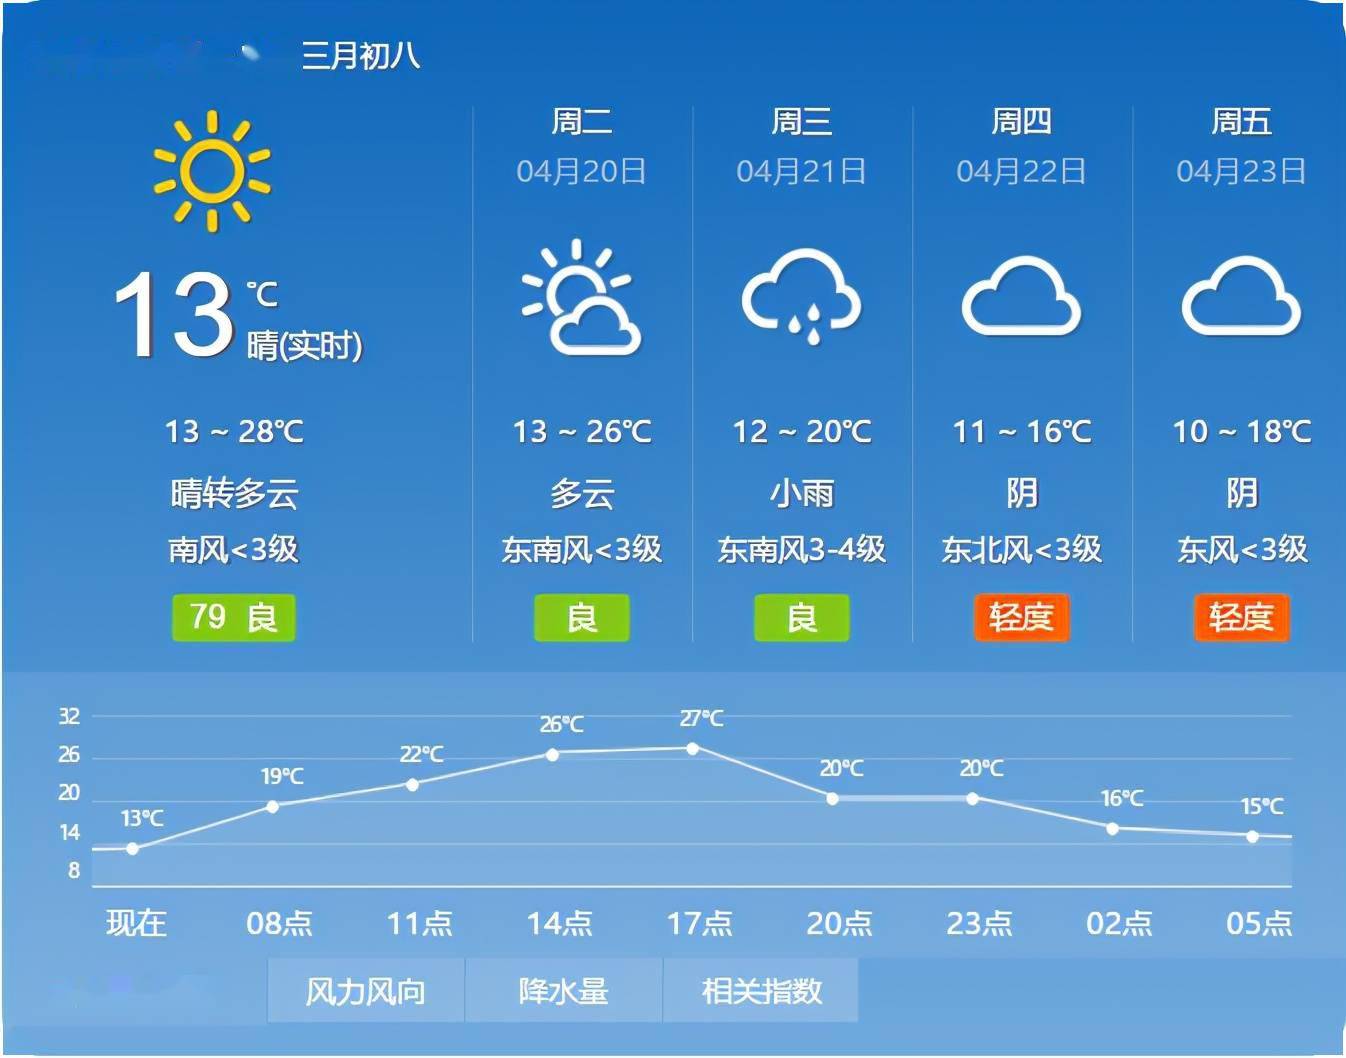 据@气象北京 今早发布北京地区天气预报:今天白天晴间多云,北转南风